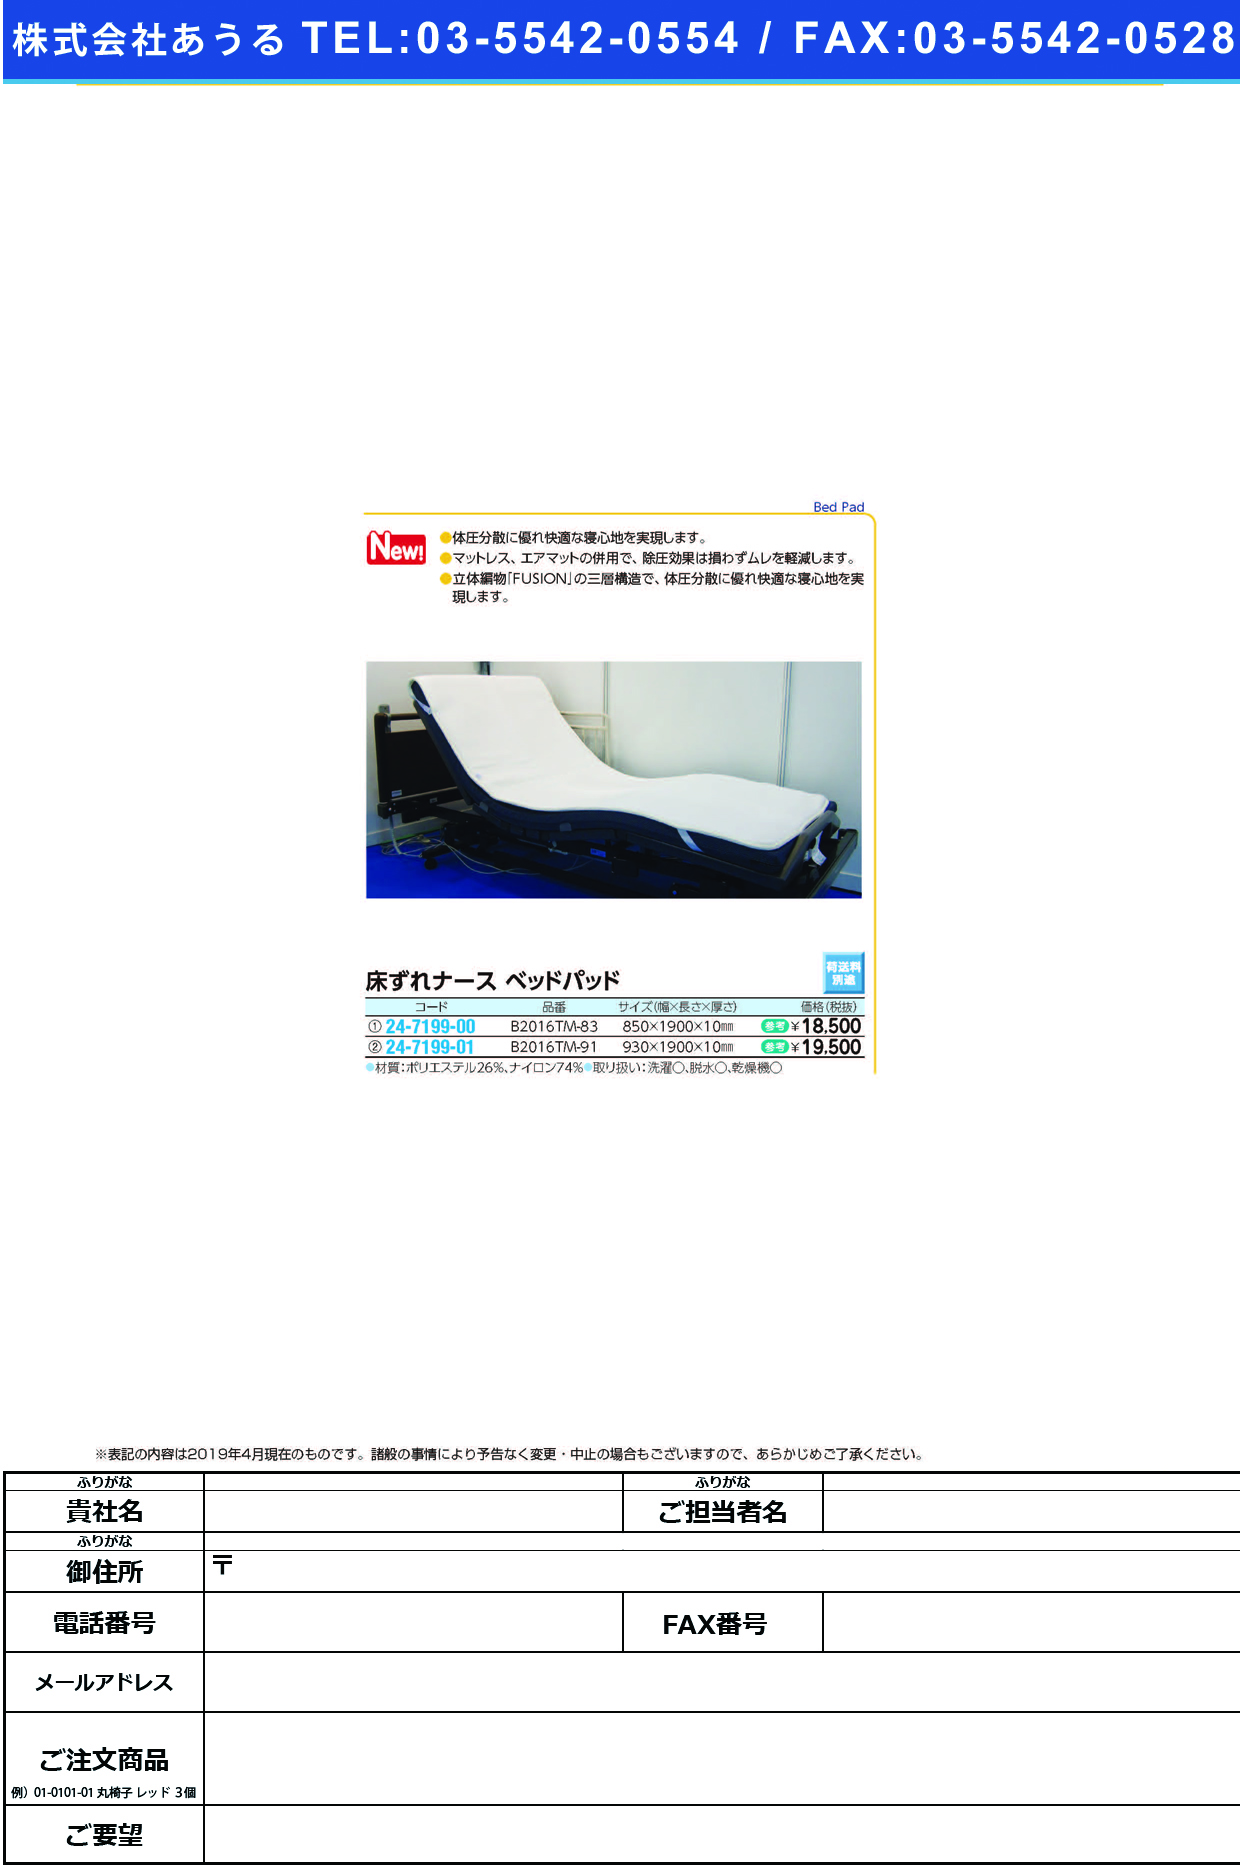 (24-7199-00)床ずれナース　ベッドパッドB2016TM-83 ﾄｺｽﾞﾚﾅｰｽﾍﾞｯﾄﾞﾊﾟｯﾄﾞ(黒田)【10枚単位】【2019年カタログ商品】